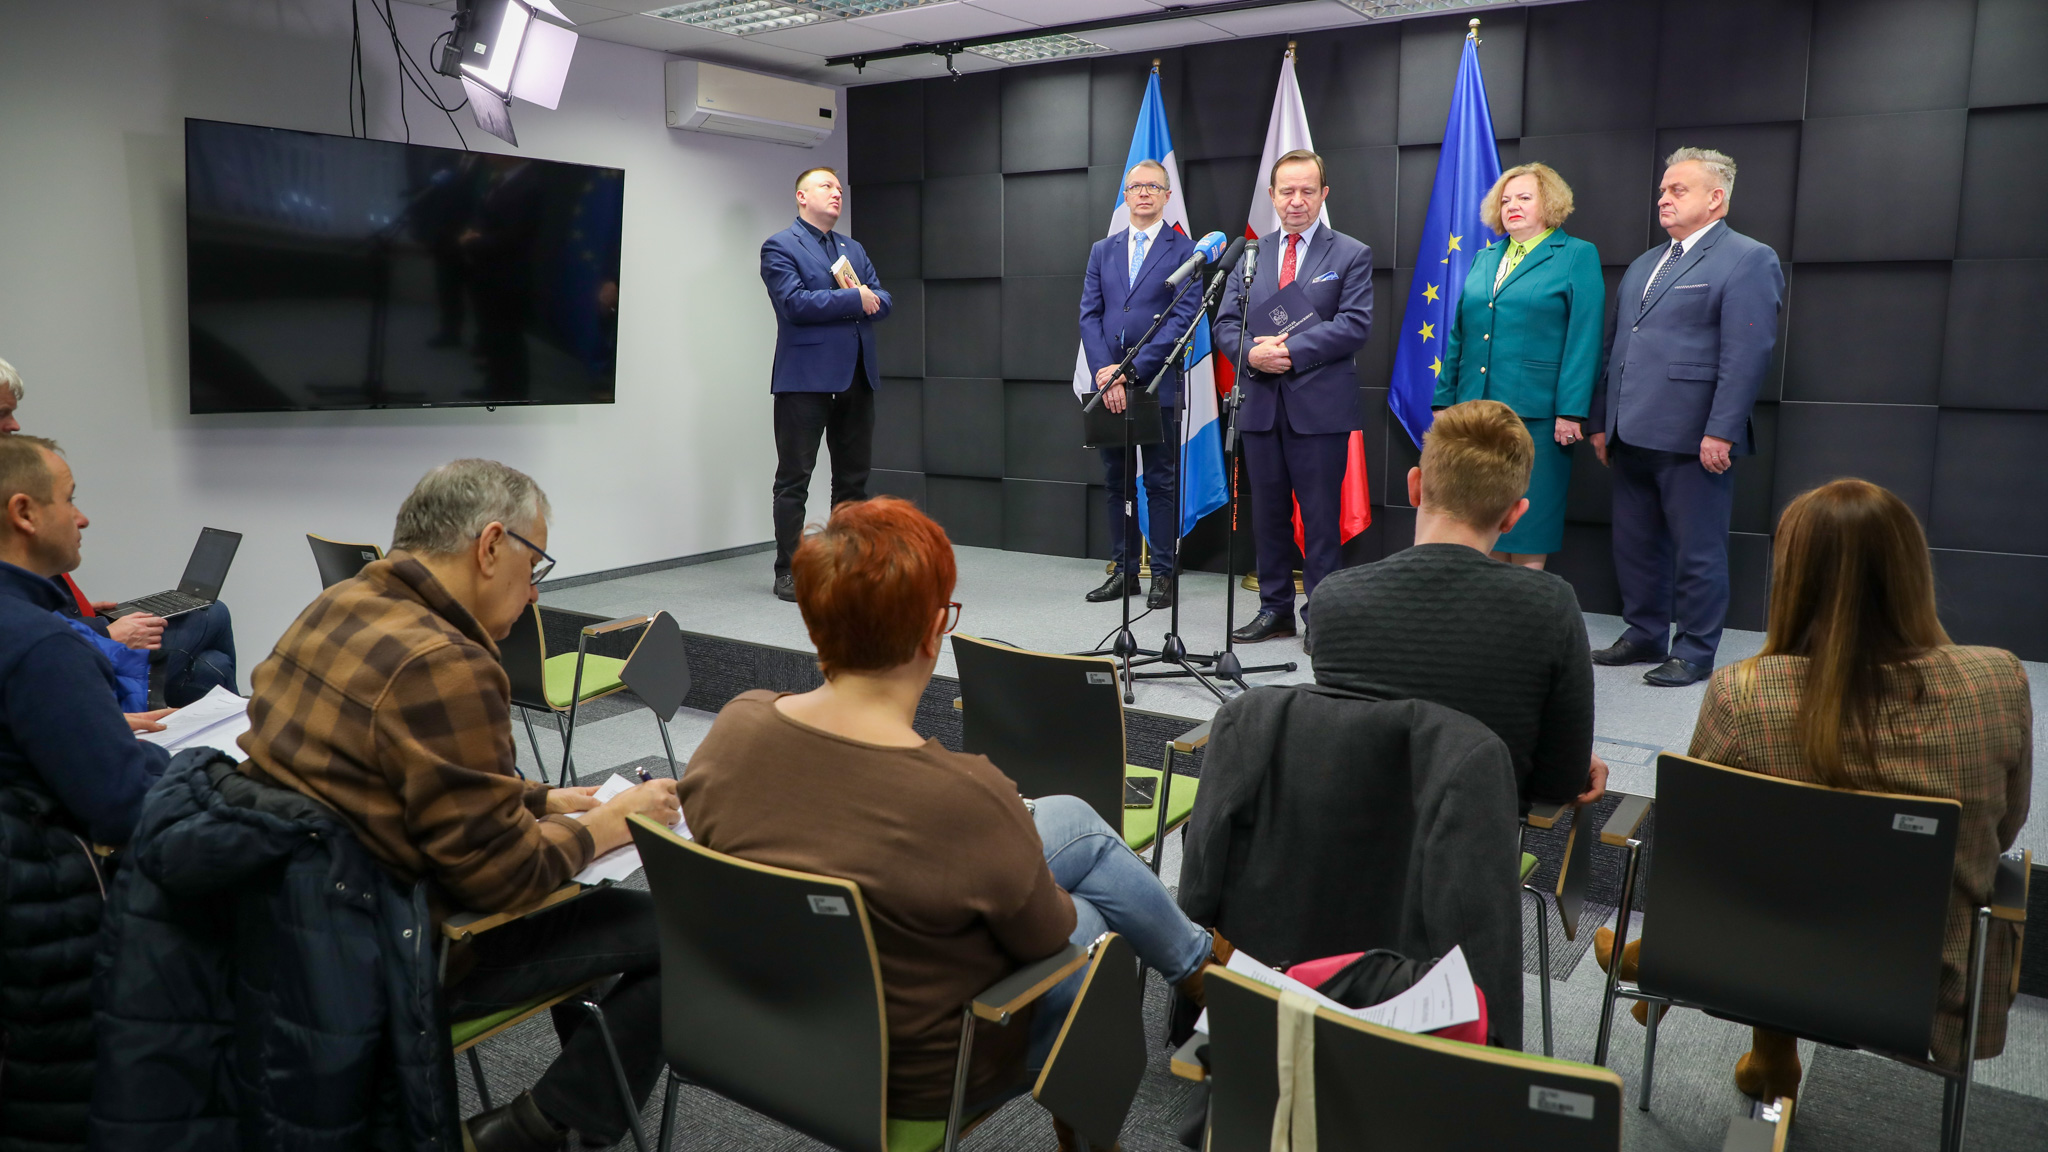 Na scenie na tle czarnej ściany i flag województw apodkarpackiego, RP i UE stoi pięć osób elegancko ubranych: jedna kobieta i czterech mężczyzn. Przed nimi siedzą dziennikarze, tyłem do fotografa.